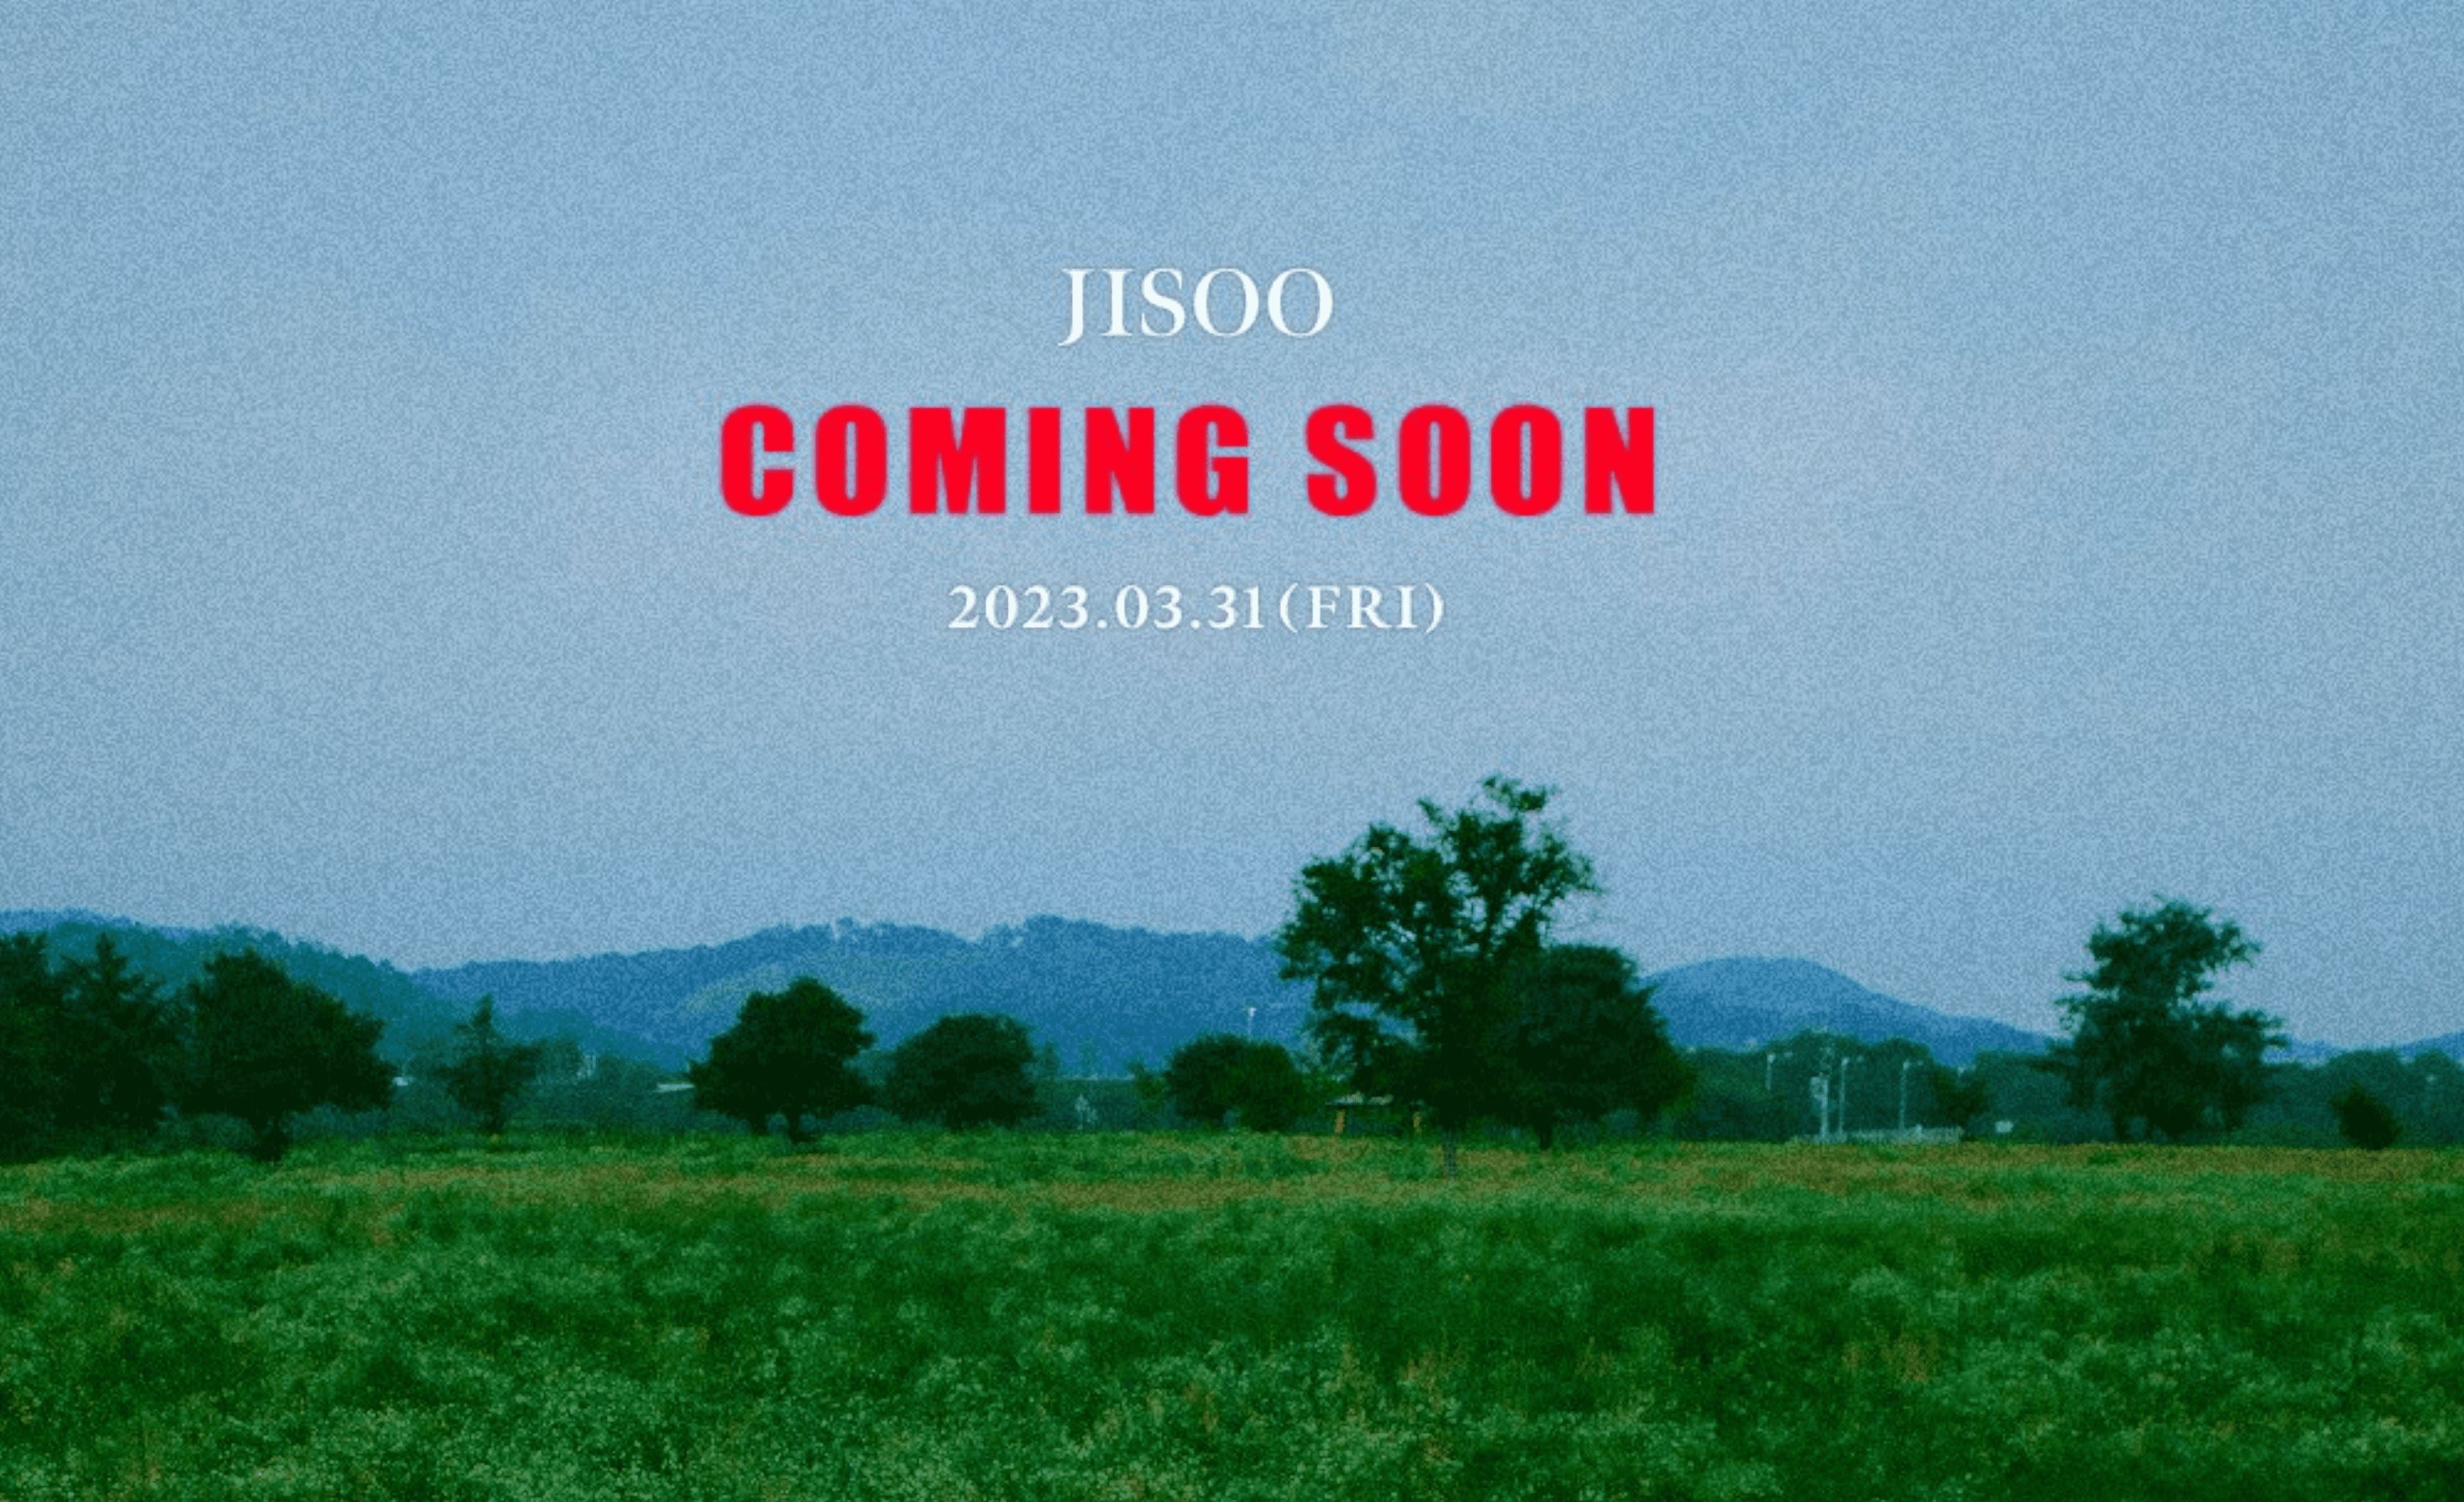 Schau dir das erste Solo Album von Blackpink's Jisoo an!